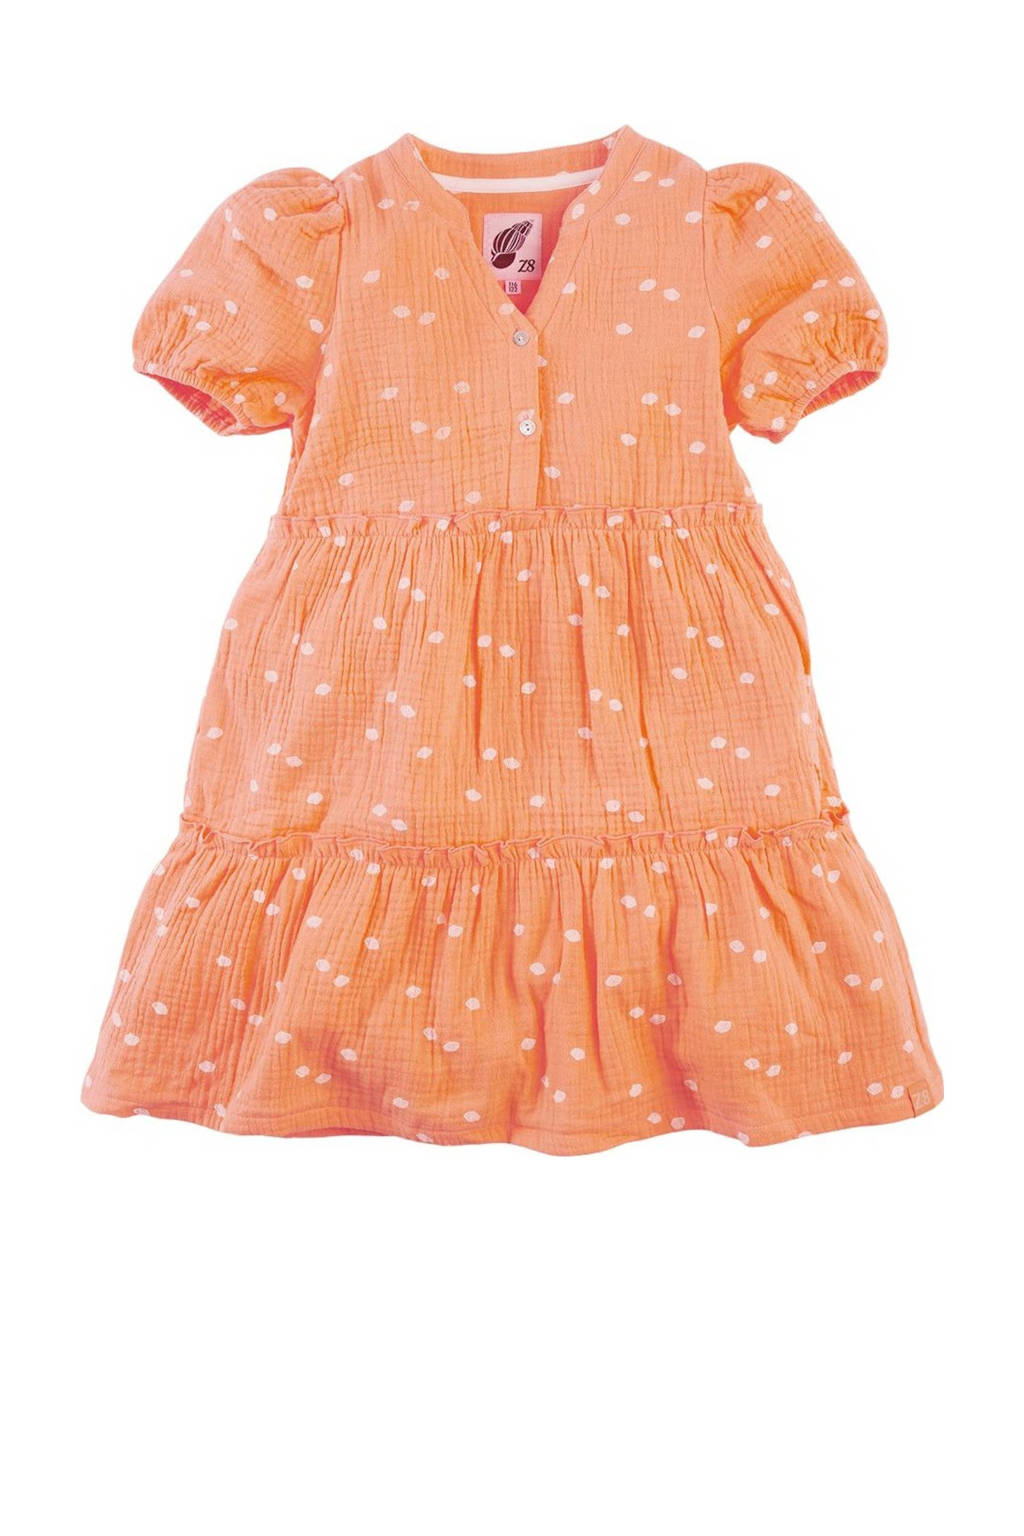 Oranje meisjes Z8 jurk Maura van katoen met stippenprint, korte mouwen, V-hals, knoopsluiting en volant